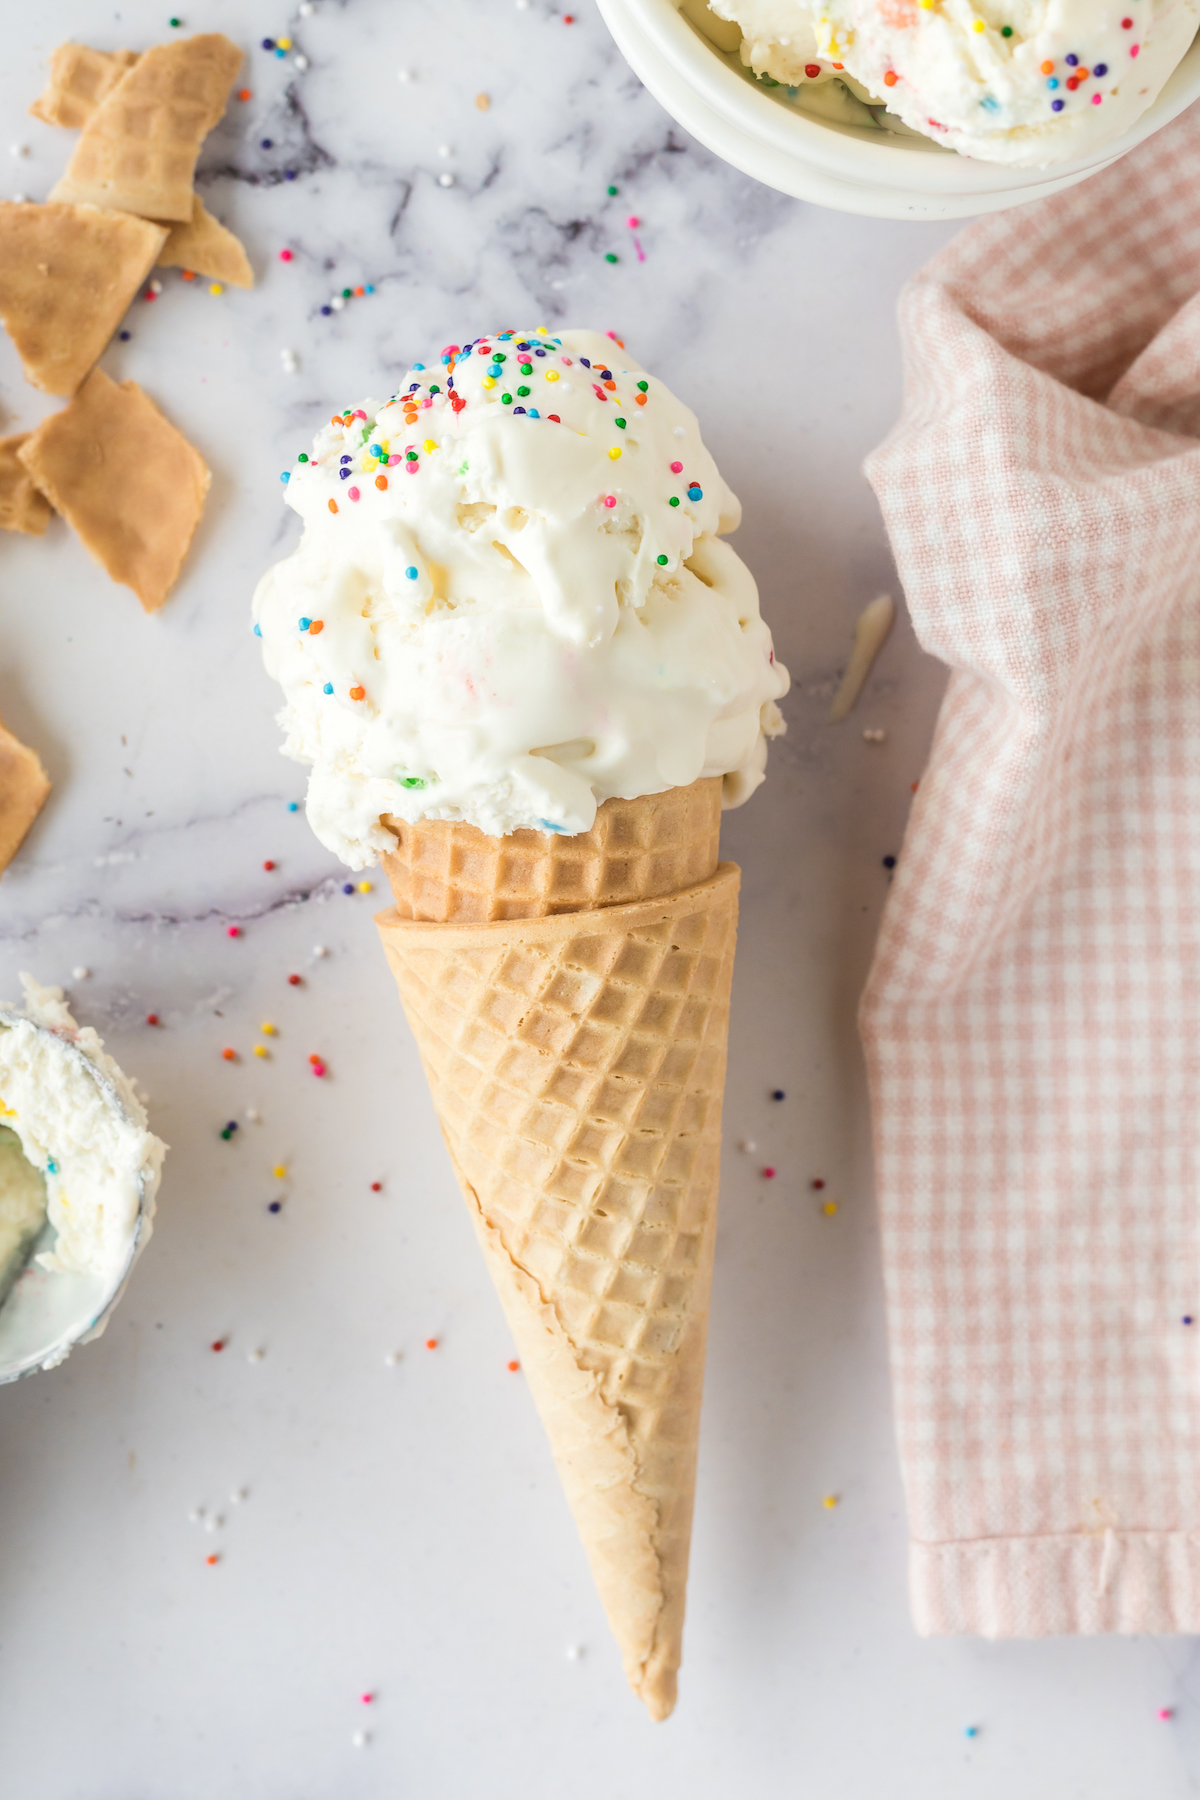 over the top photo of funfetti ice cream scoops in cone